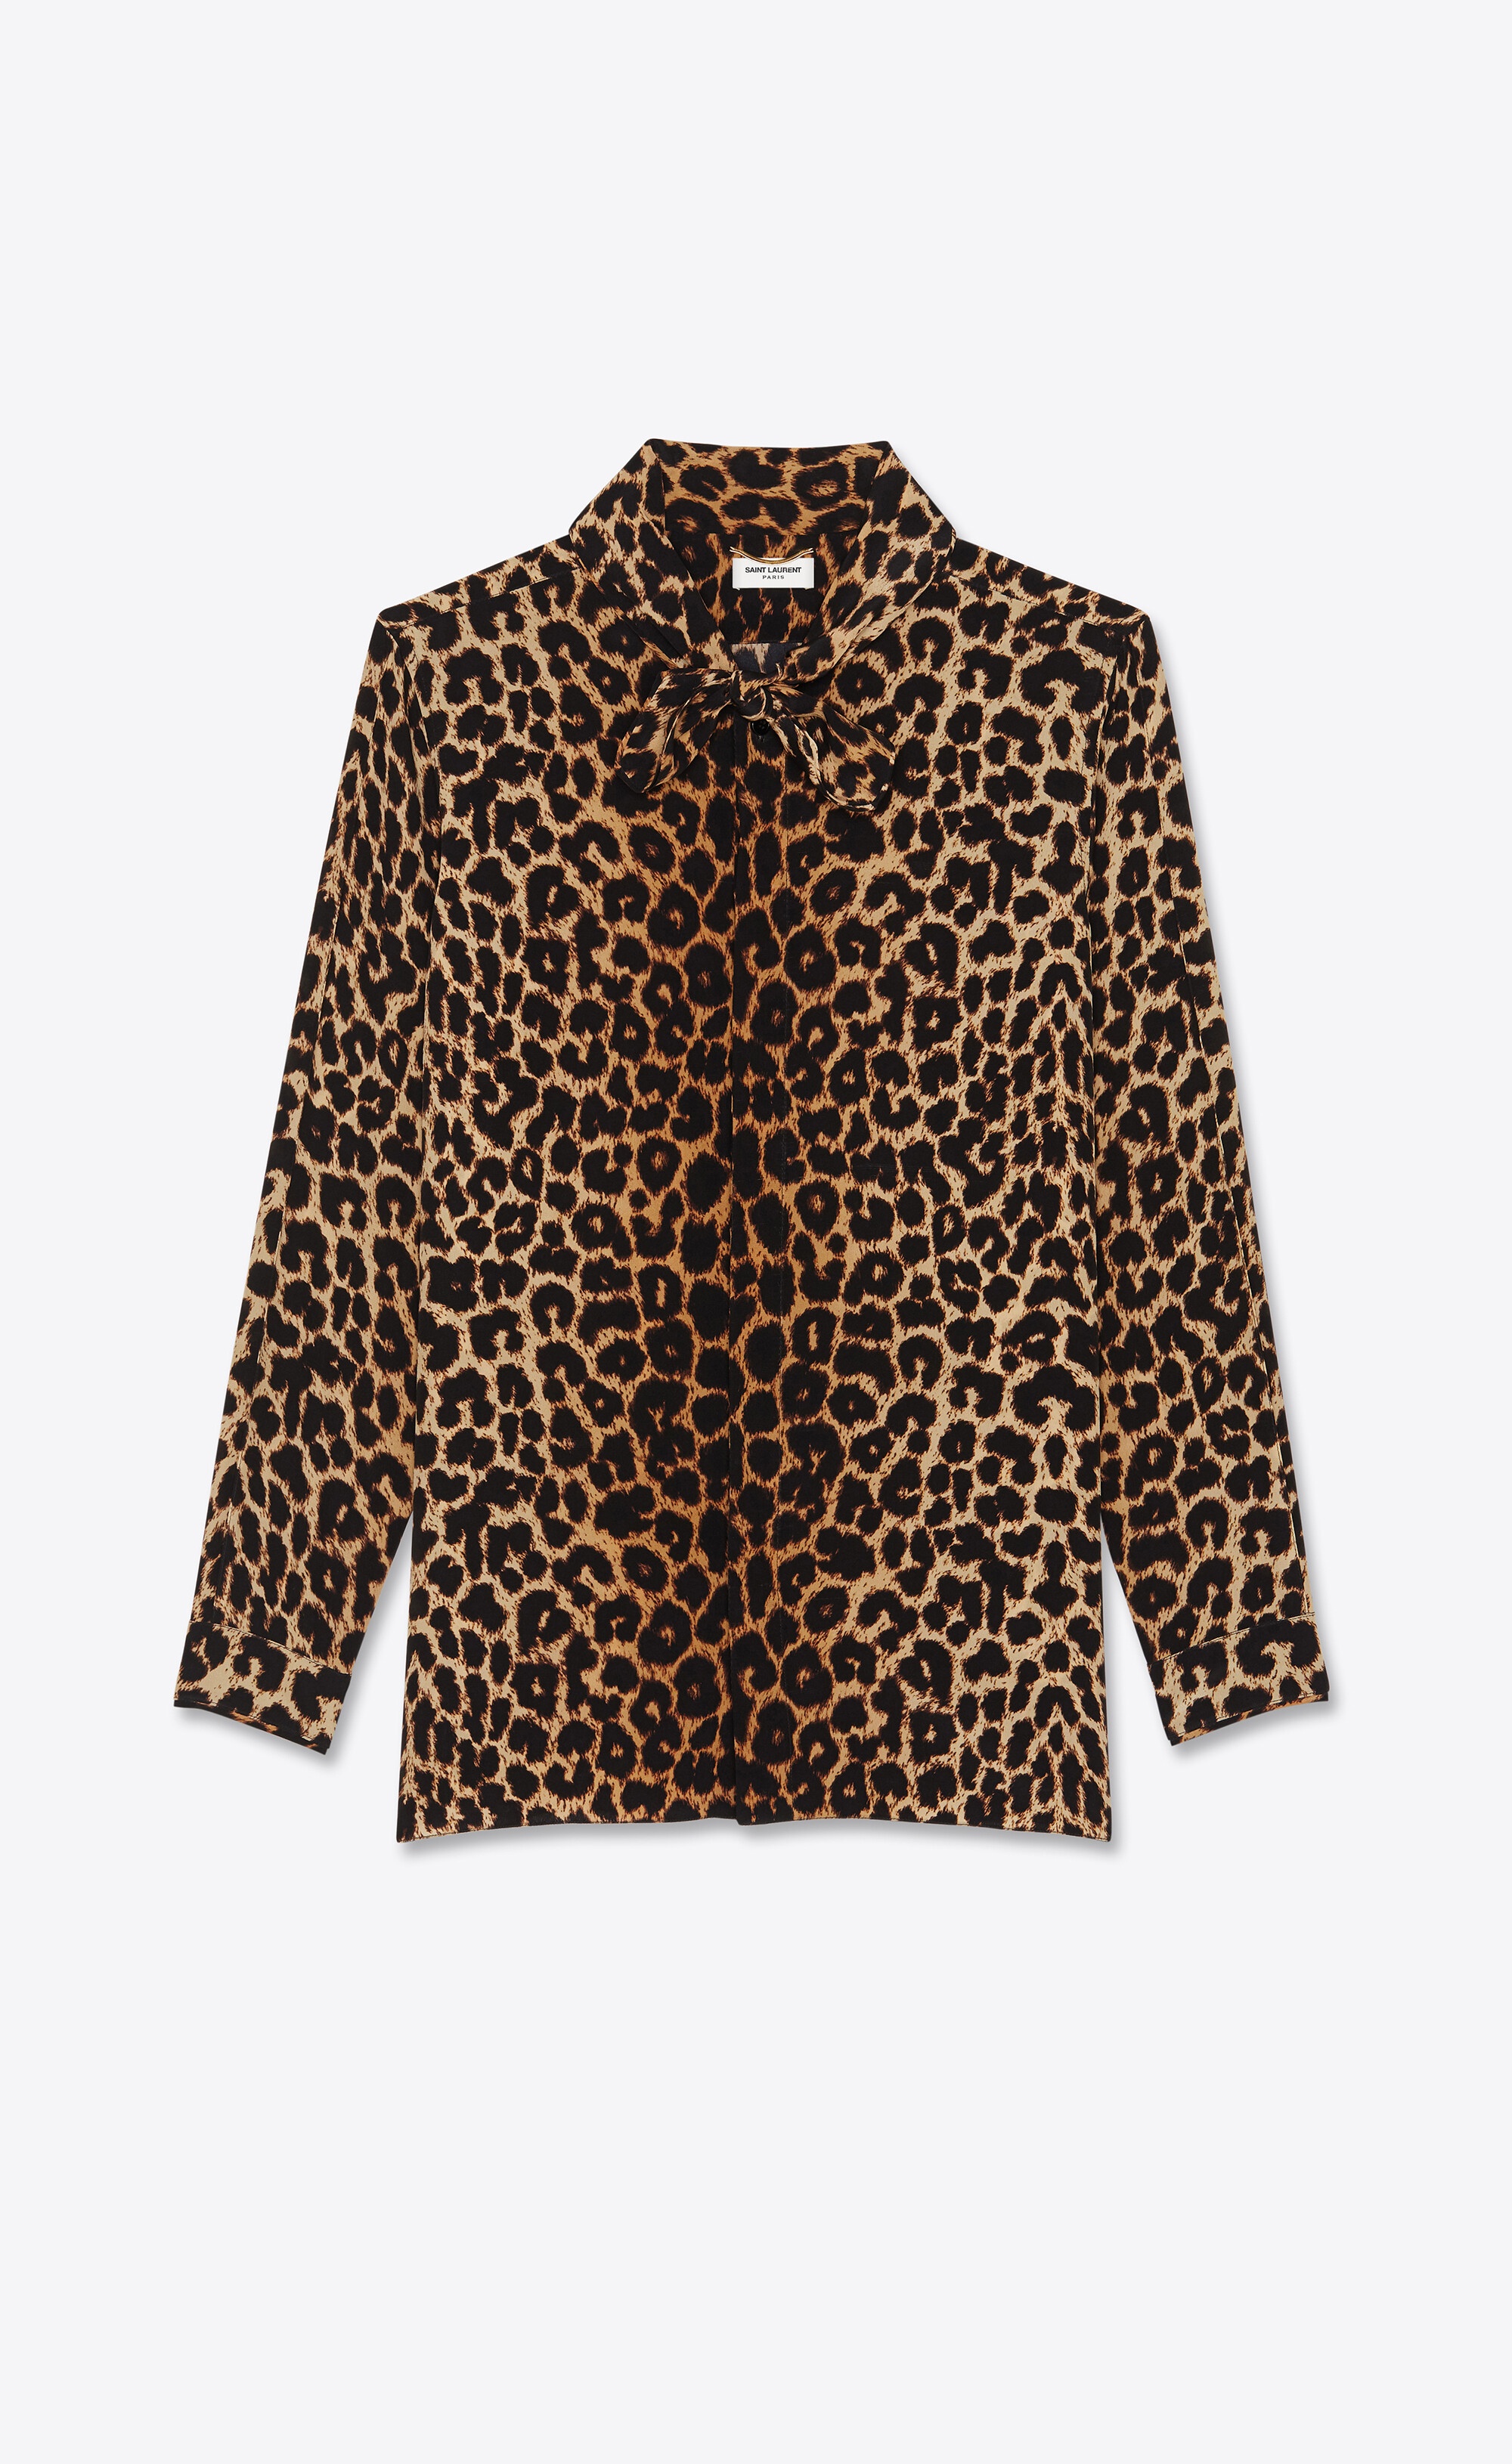 lavallière-neck shirt in leopard-print silk crepe de chine - 1